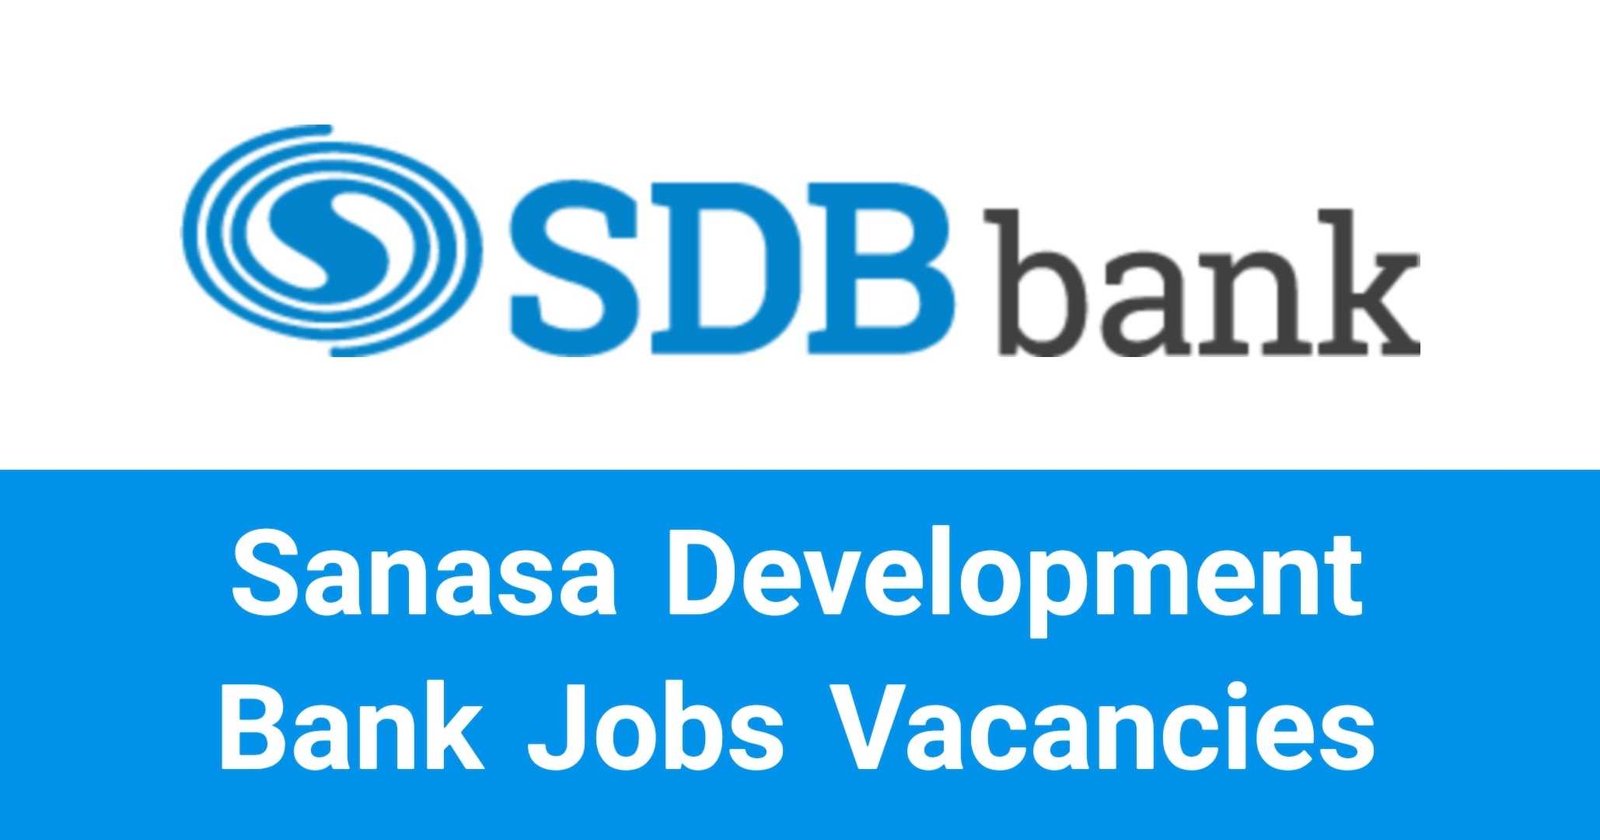 Sanasa Development Bank Jobs Vacancies Recruitments